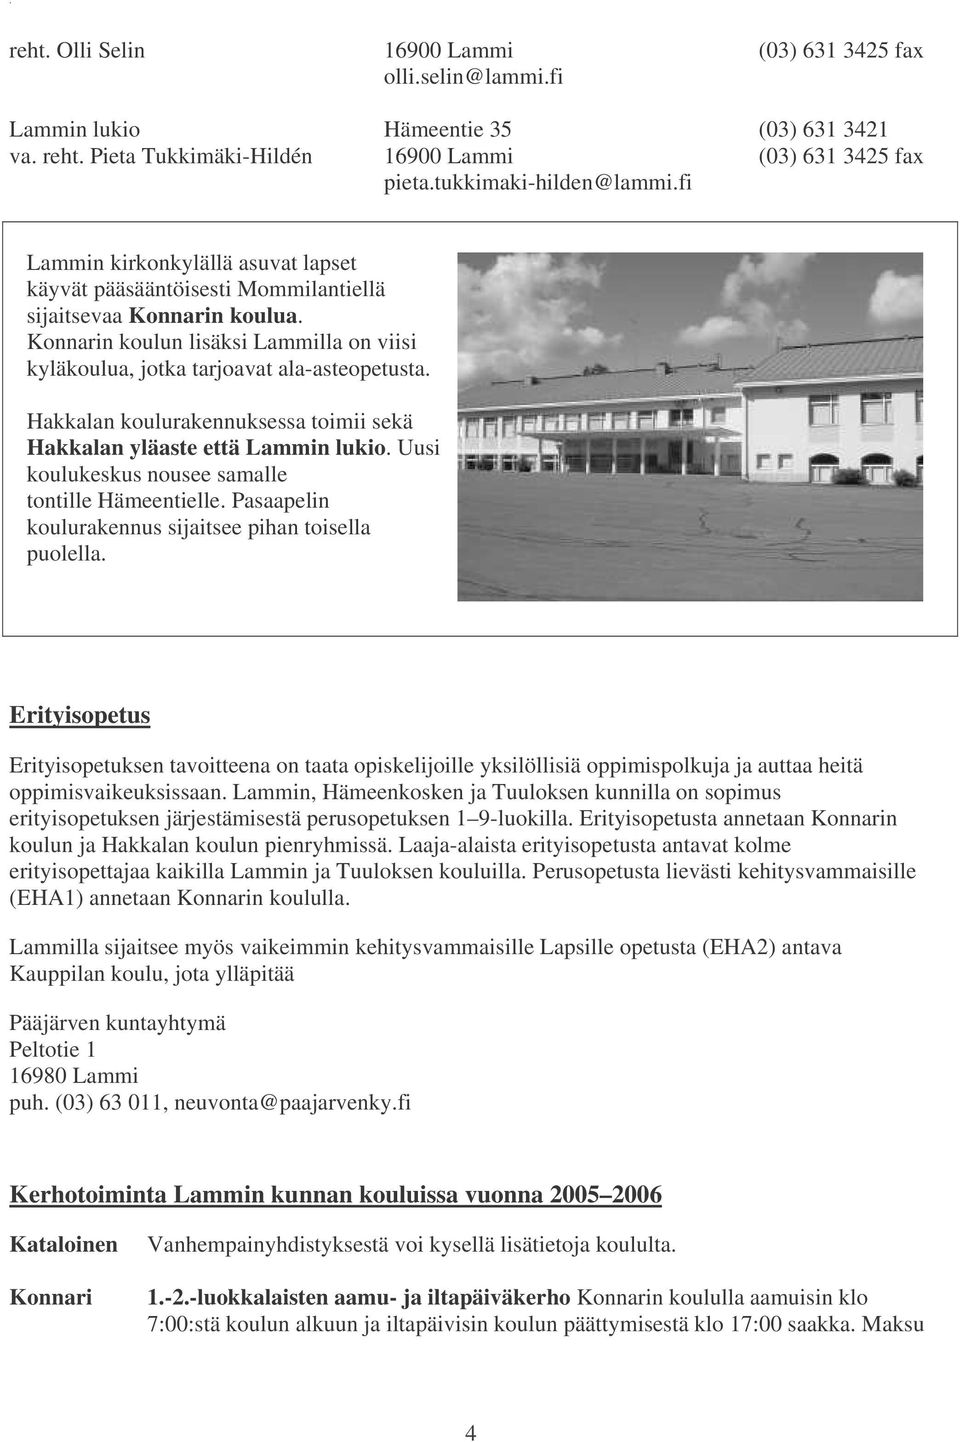 Hakkalan koulurakennuksessa toimii sekä Hakkalan yläaste että Lammin lukio. Uusi koulukeskus nousee samalle tontille Hämeentielle. Pasaapelin koulurakennus sijaitsee pihan toisella puolella.